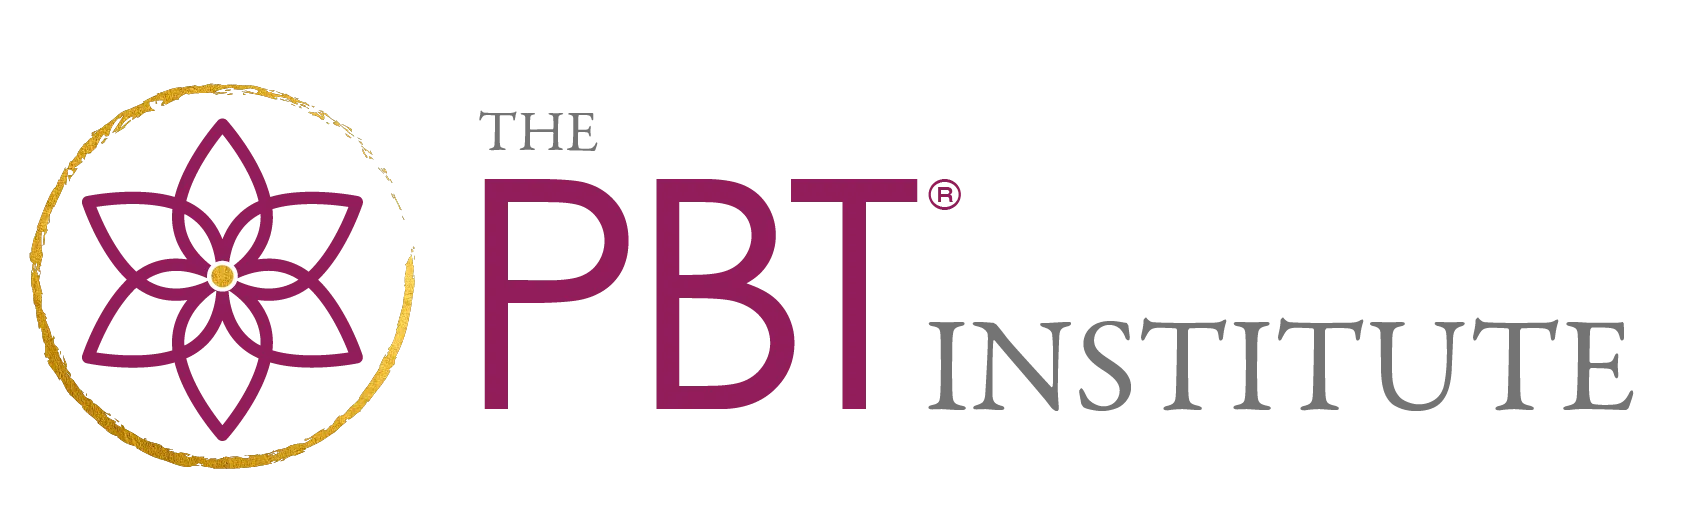 Pbt Institute